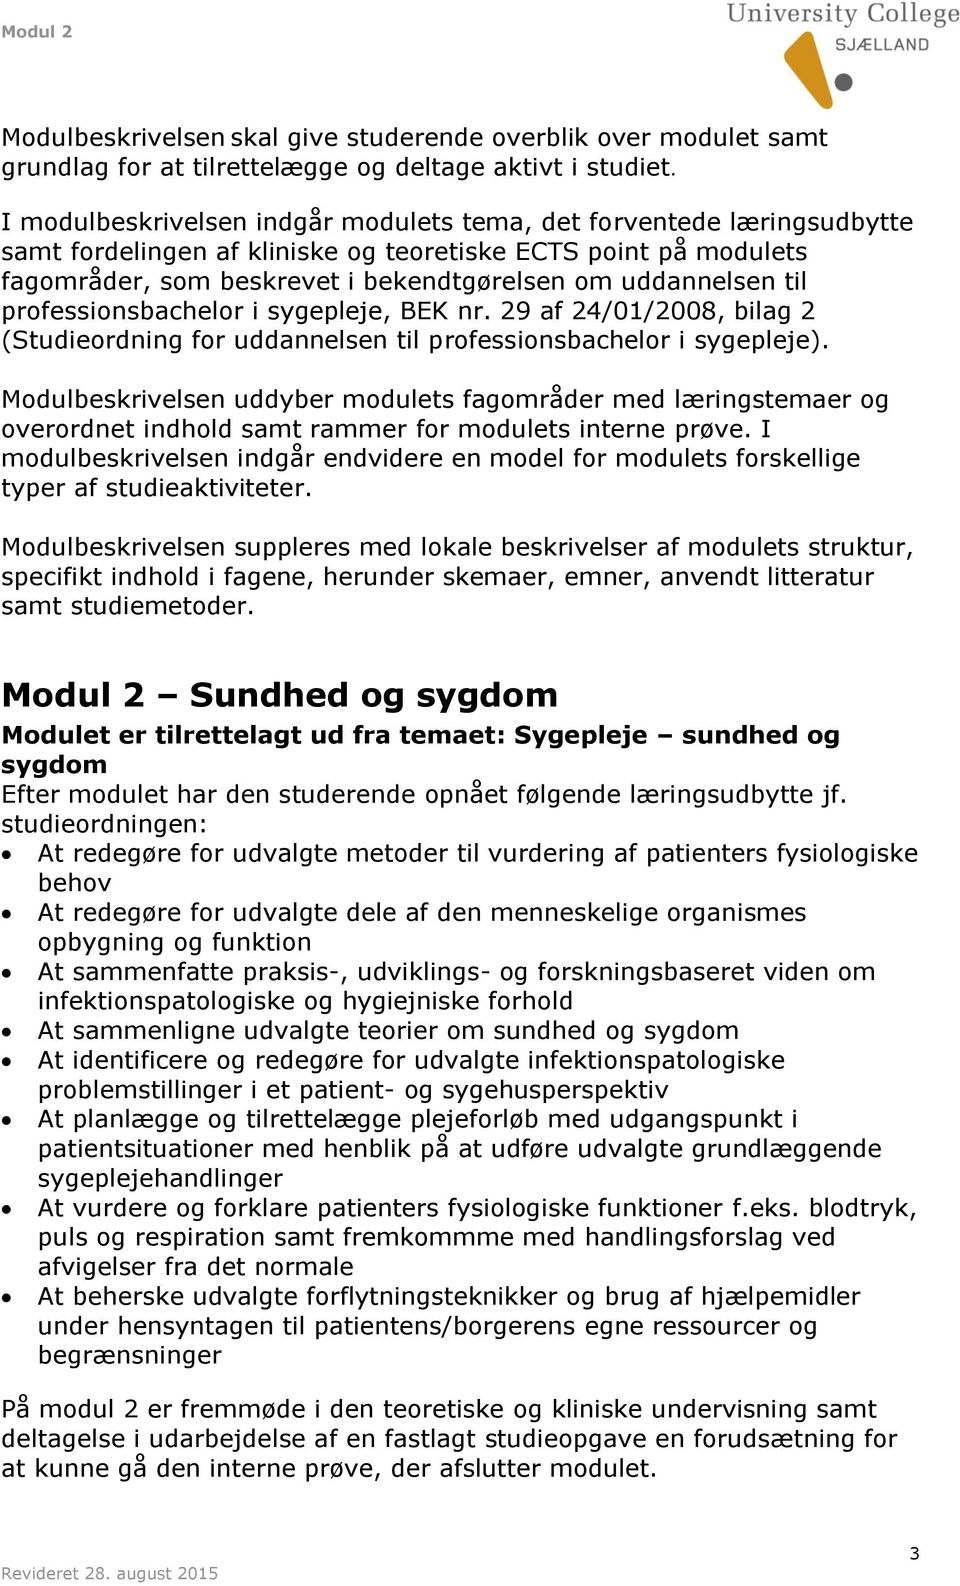 til professionsbachelor i sygepleje, BEK nr. 29 af 24/01/2008, bilag 2 (Studieordning for uddannelsen til professionsbachelor i sygepleje).